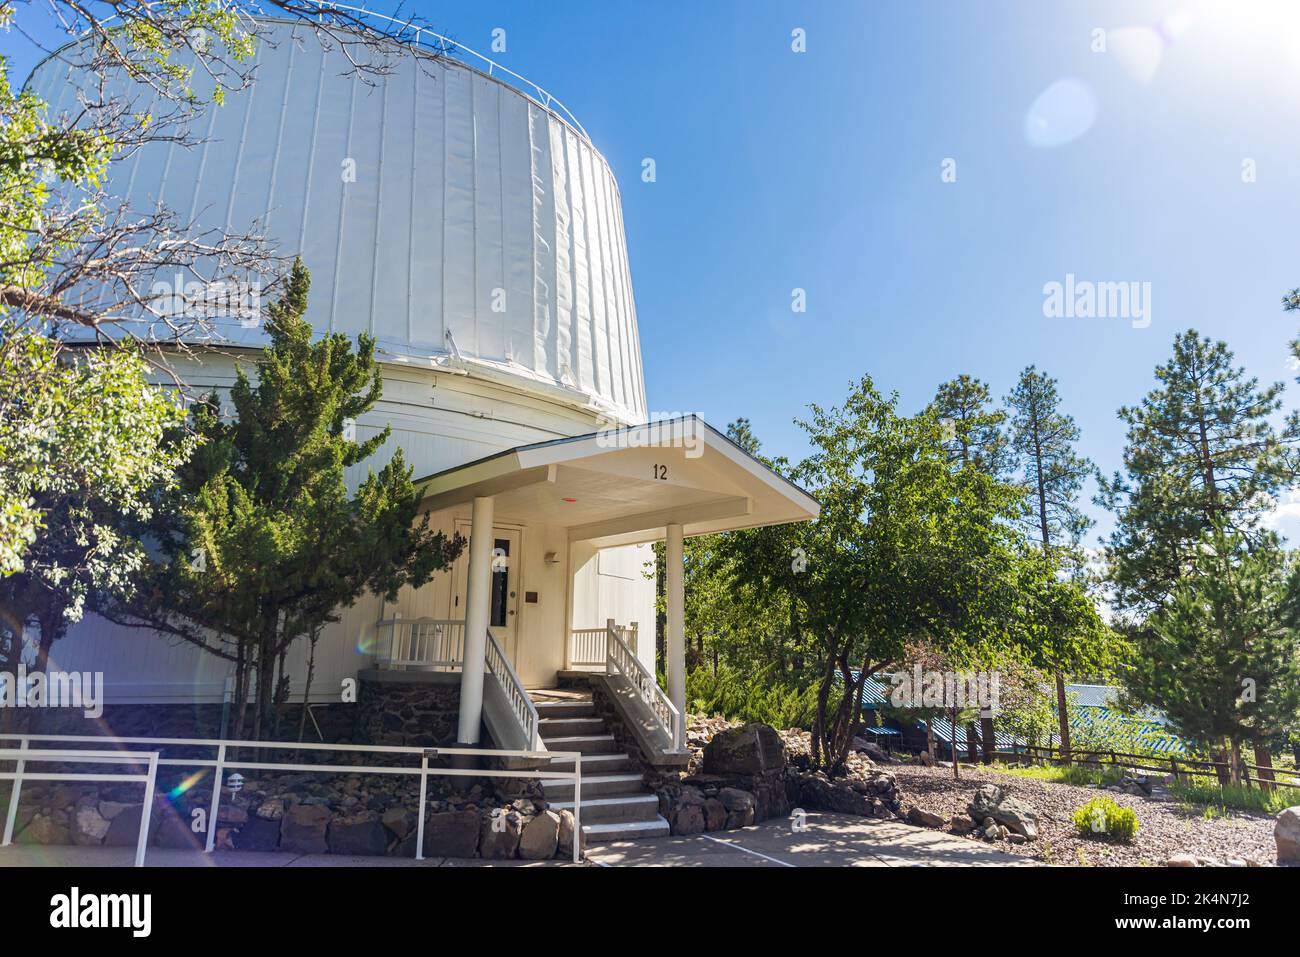 FLAGSTAFF, AZ - 1 SEPTEMBRE 2022 : Lowell Observatory, célèbre observatoire de l'Arizona fondé par Percival Lowell. Banque D'Images